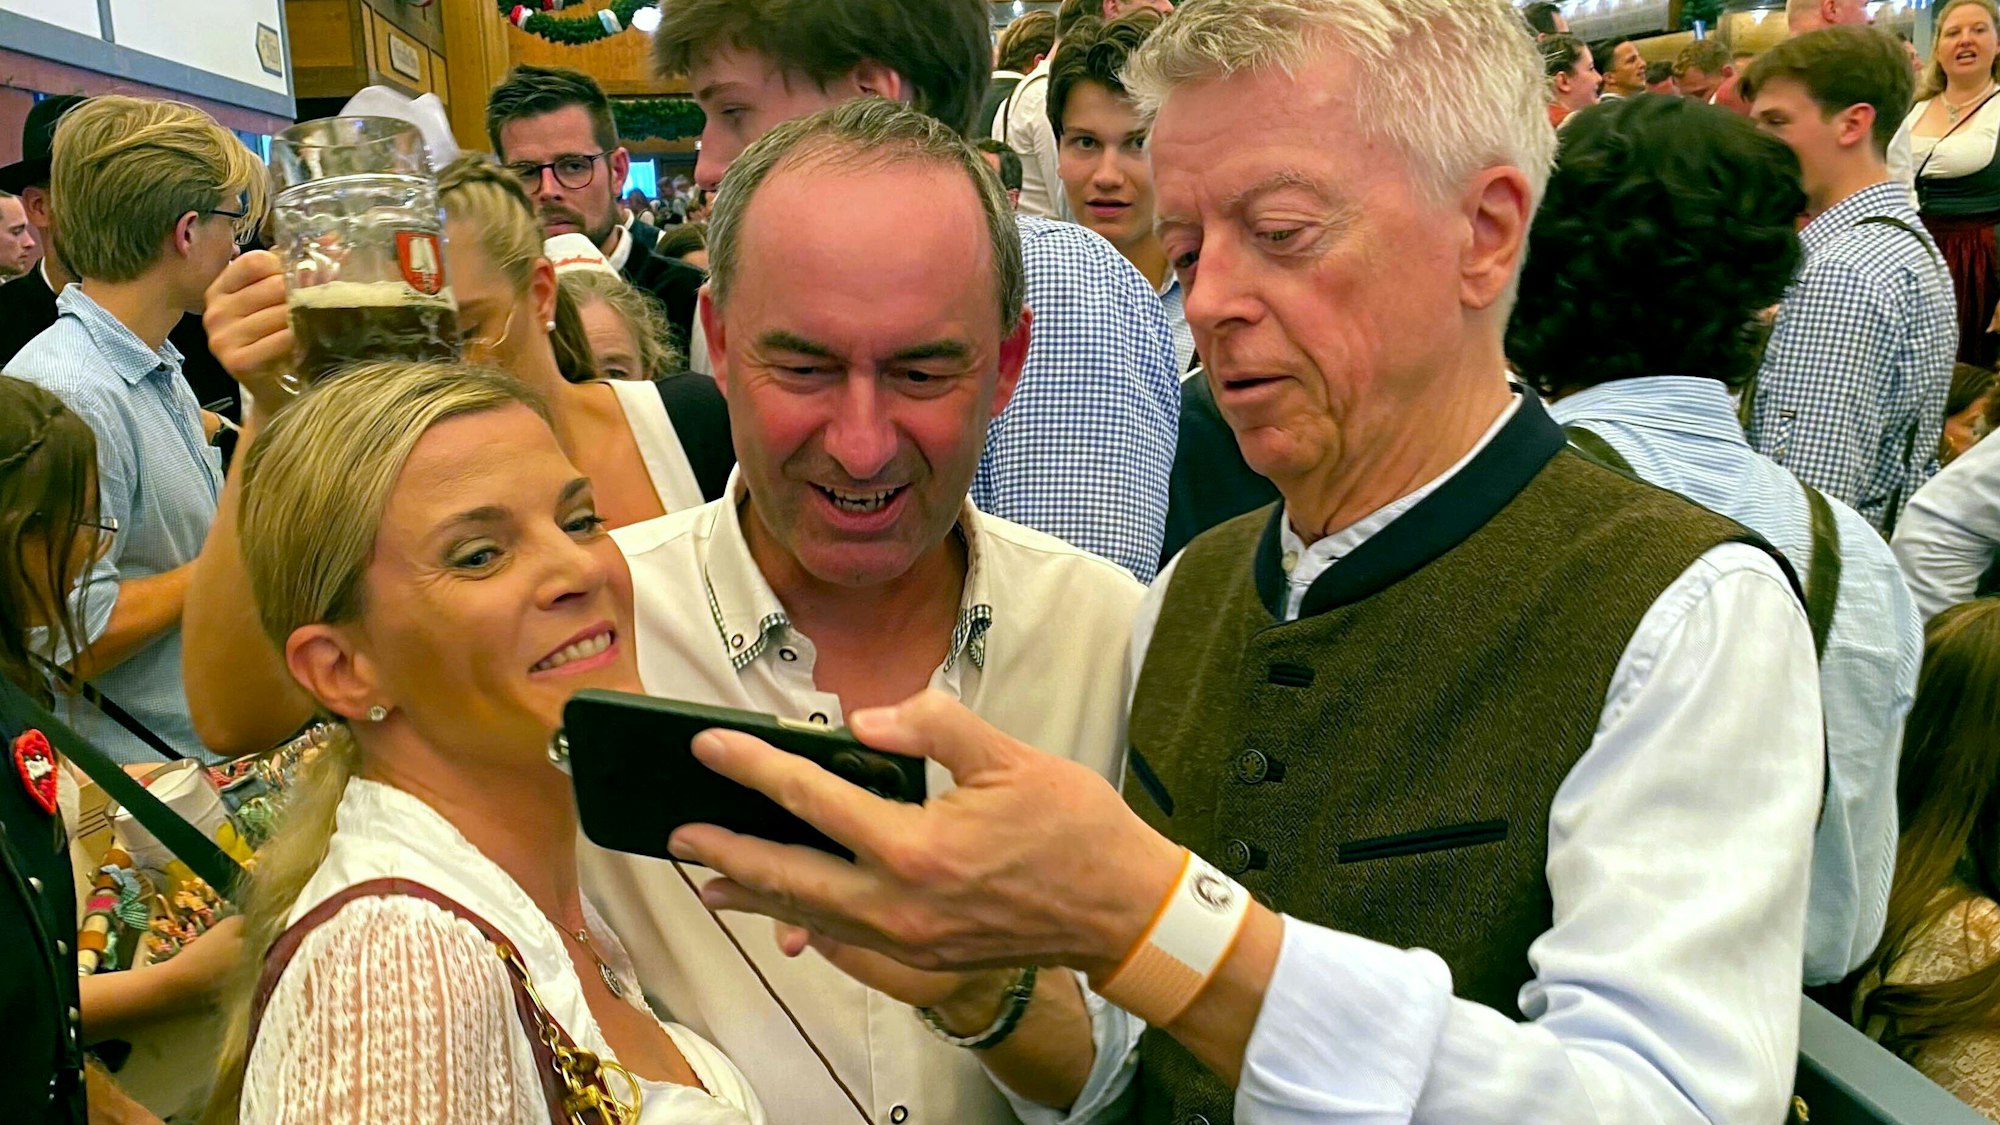 Hubert Aiwanger, Bundesvorsitzender der Freien Wähler, macht im Schottenhamel ein Selfie mit Gästen.